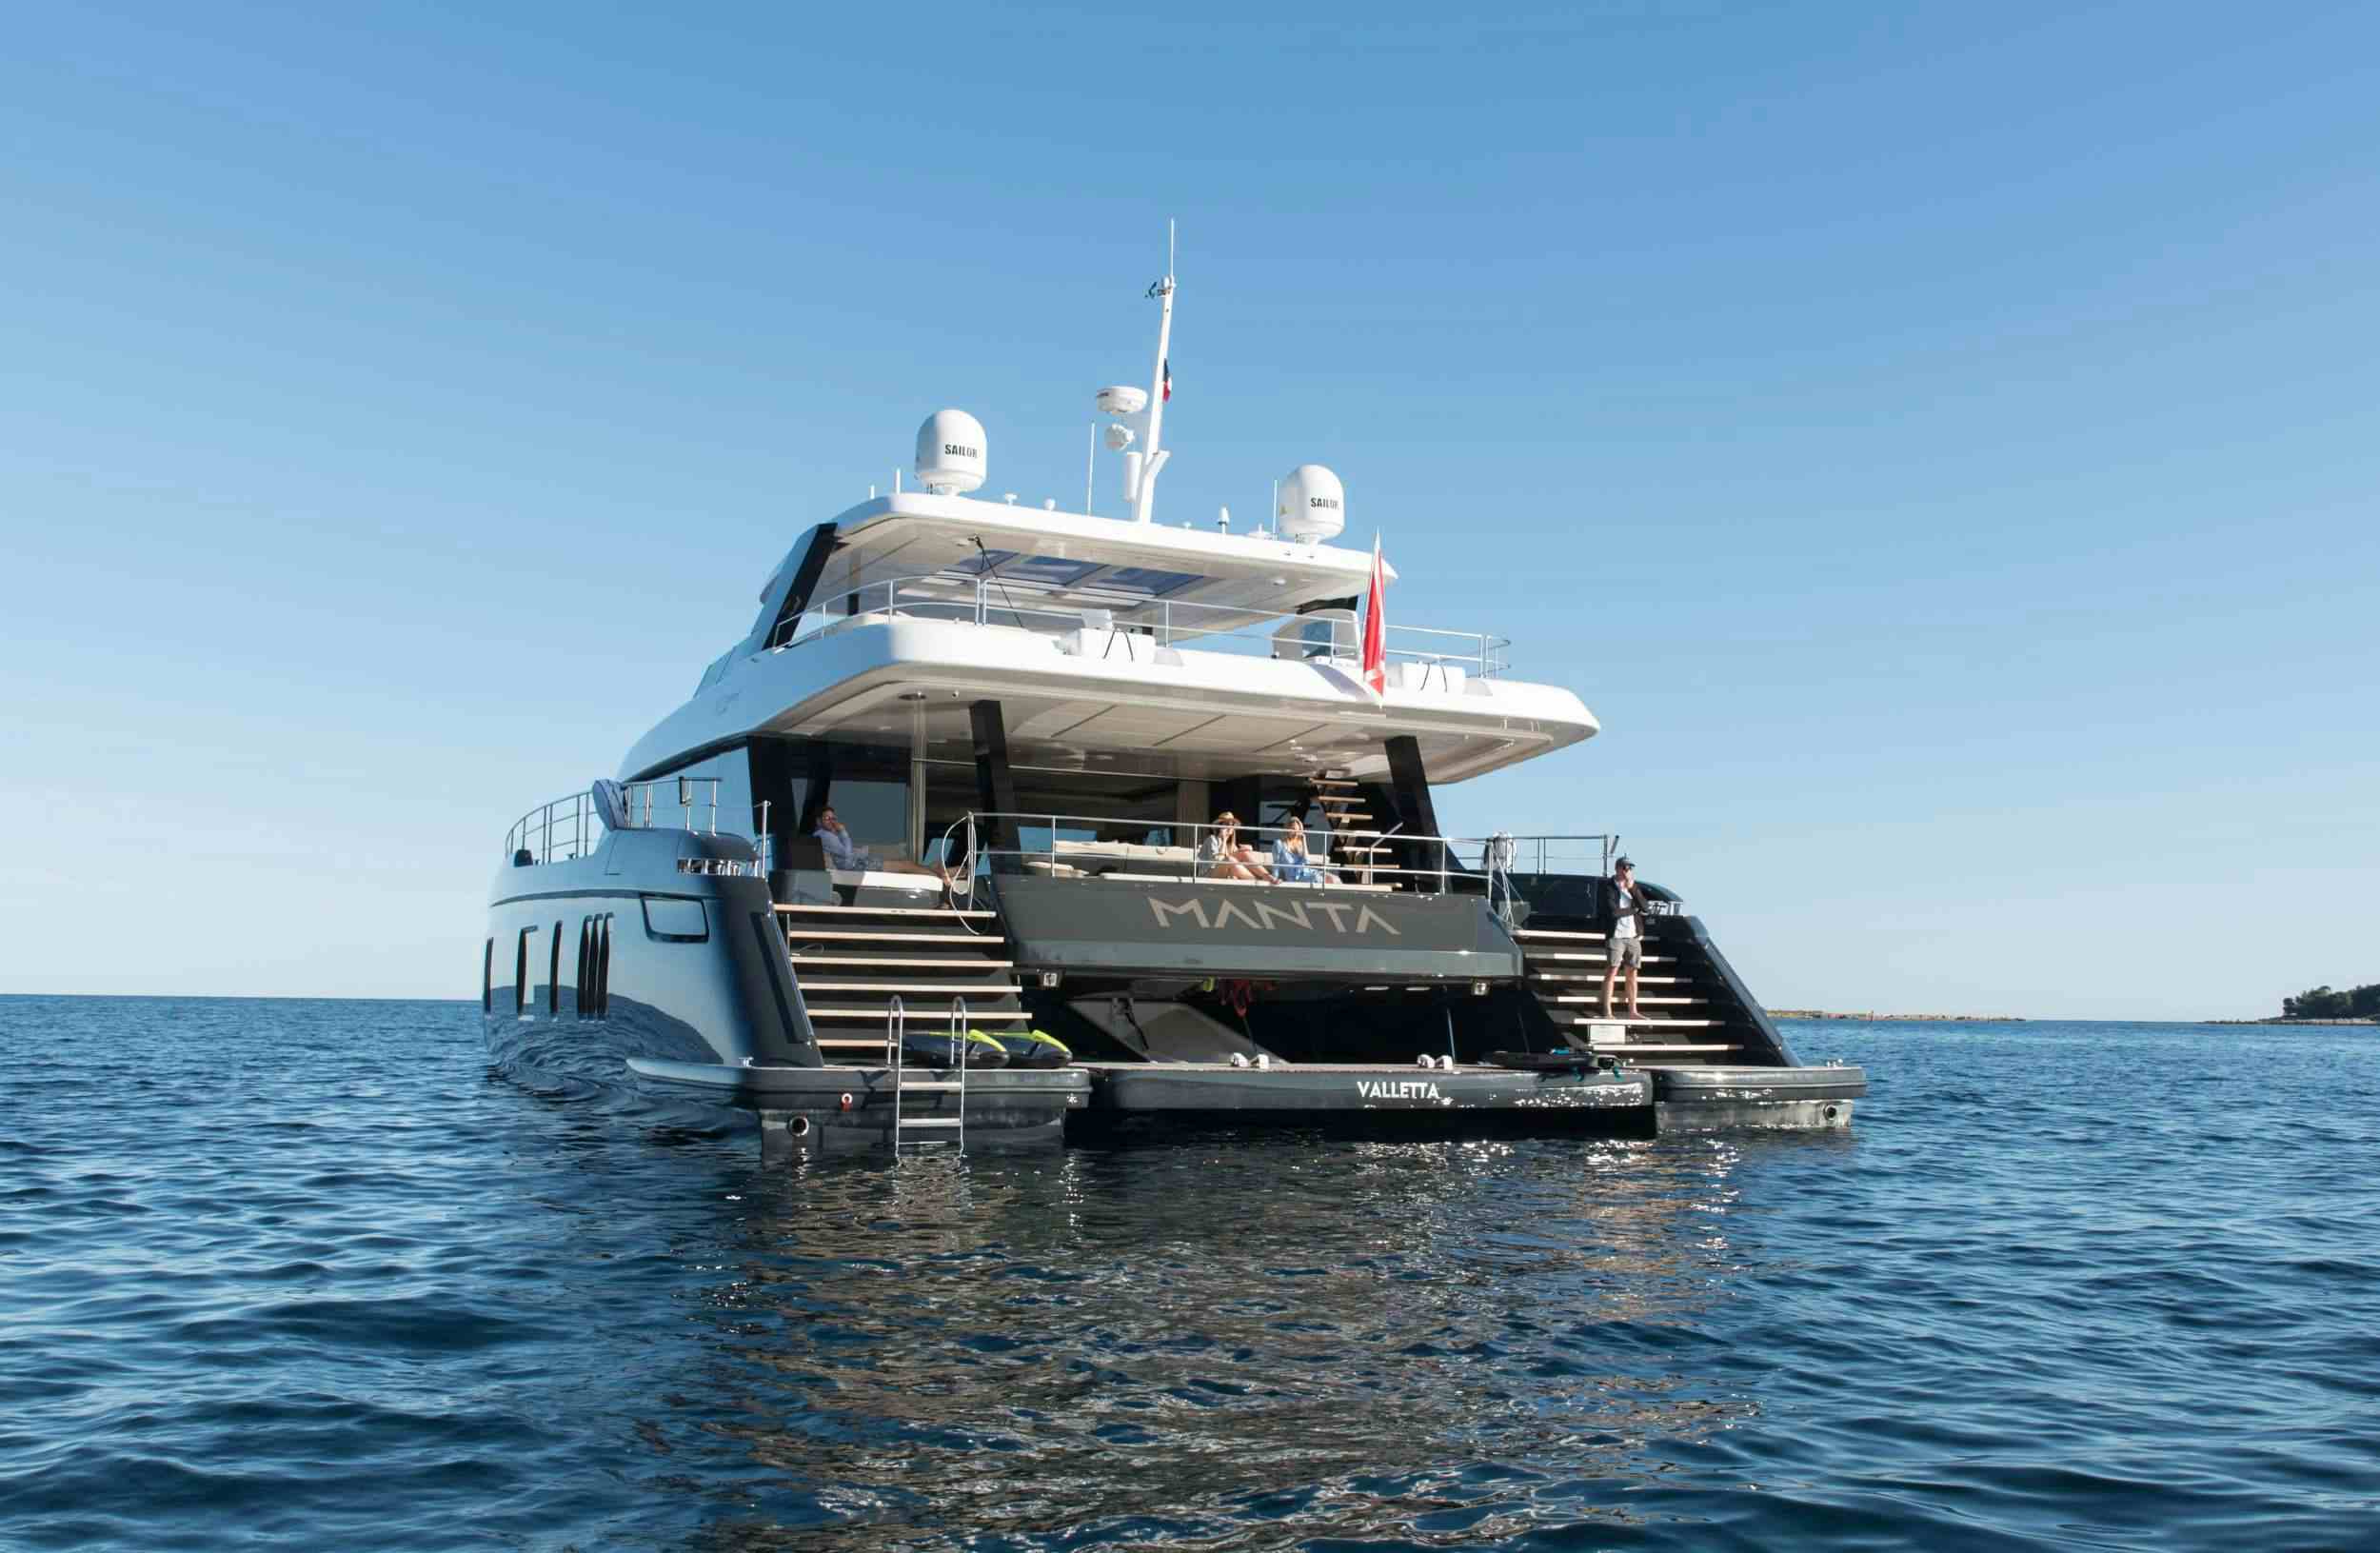 MANTA - Yacht Charter Ponza & Boat hire in Riviera, Cors, Sard, Italy, Spain, Turkey, Croatia, Greece 1